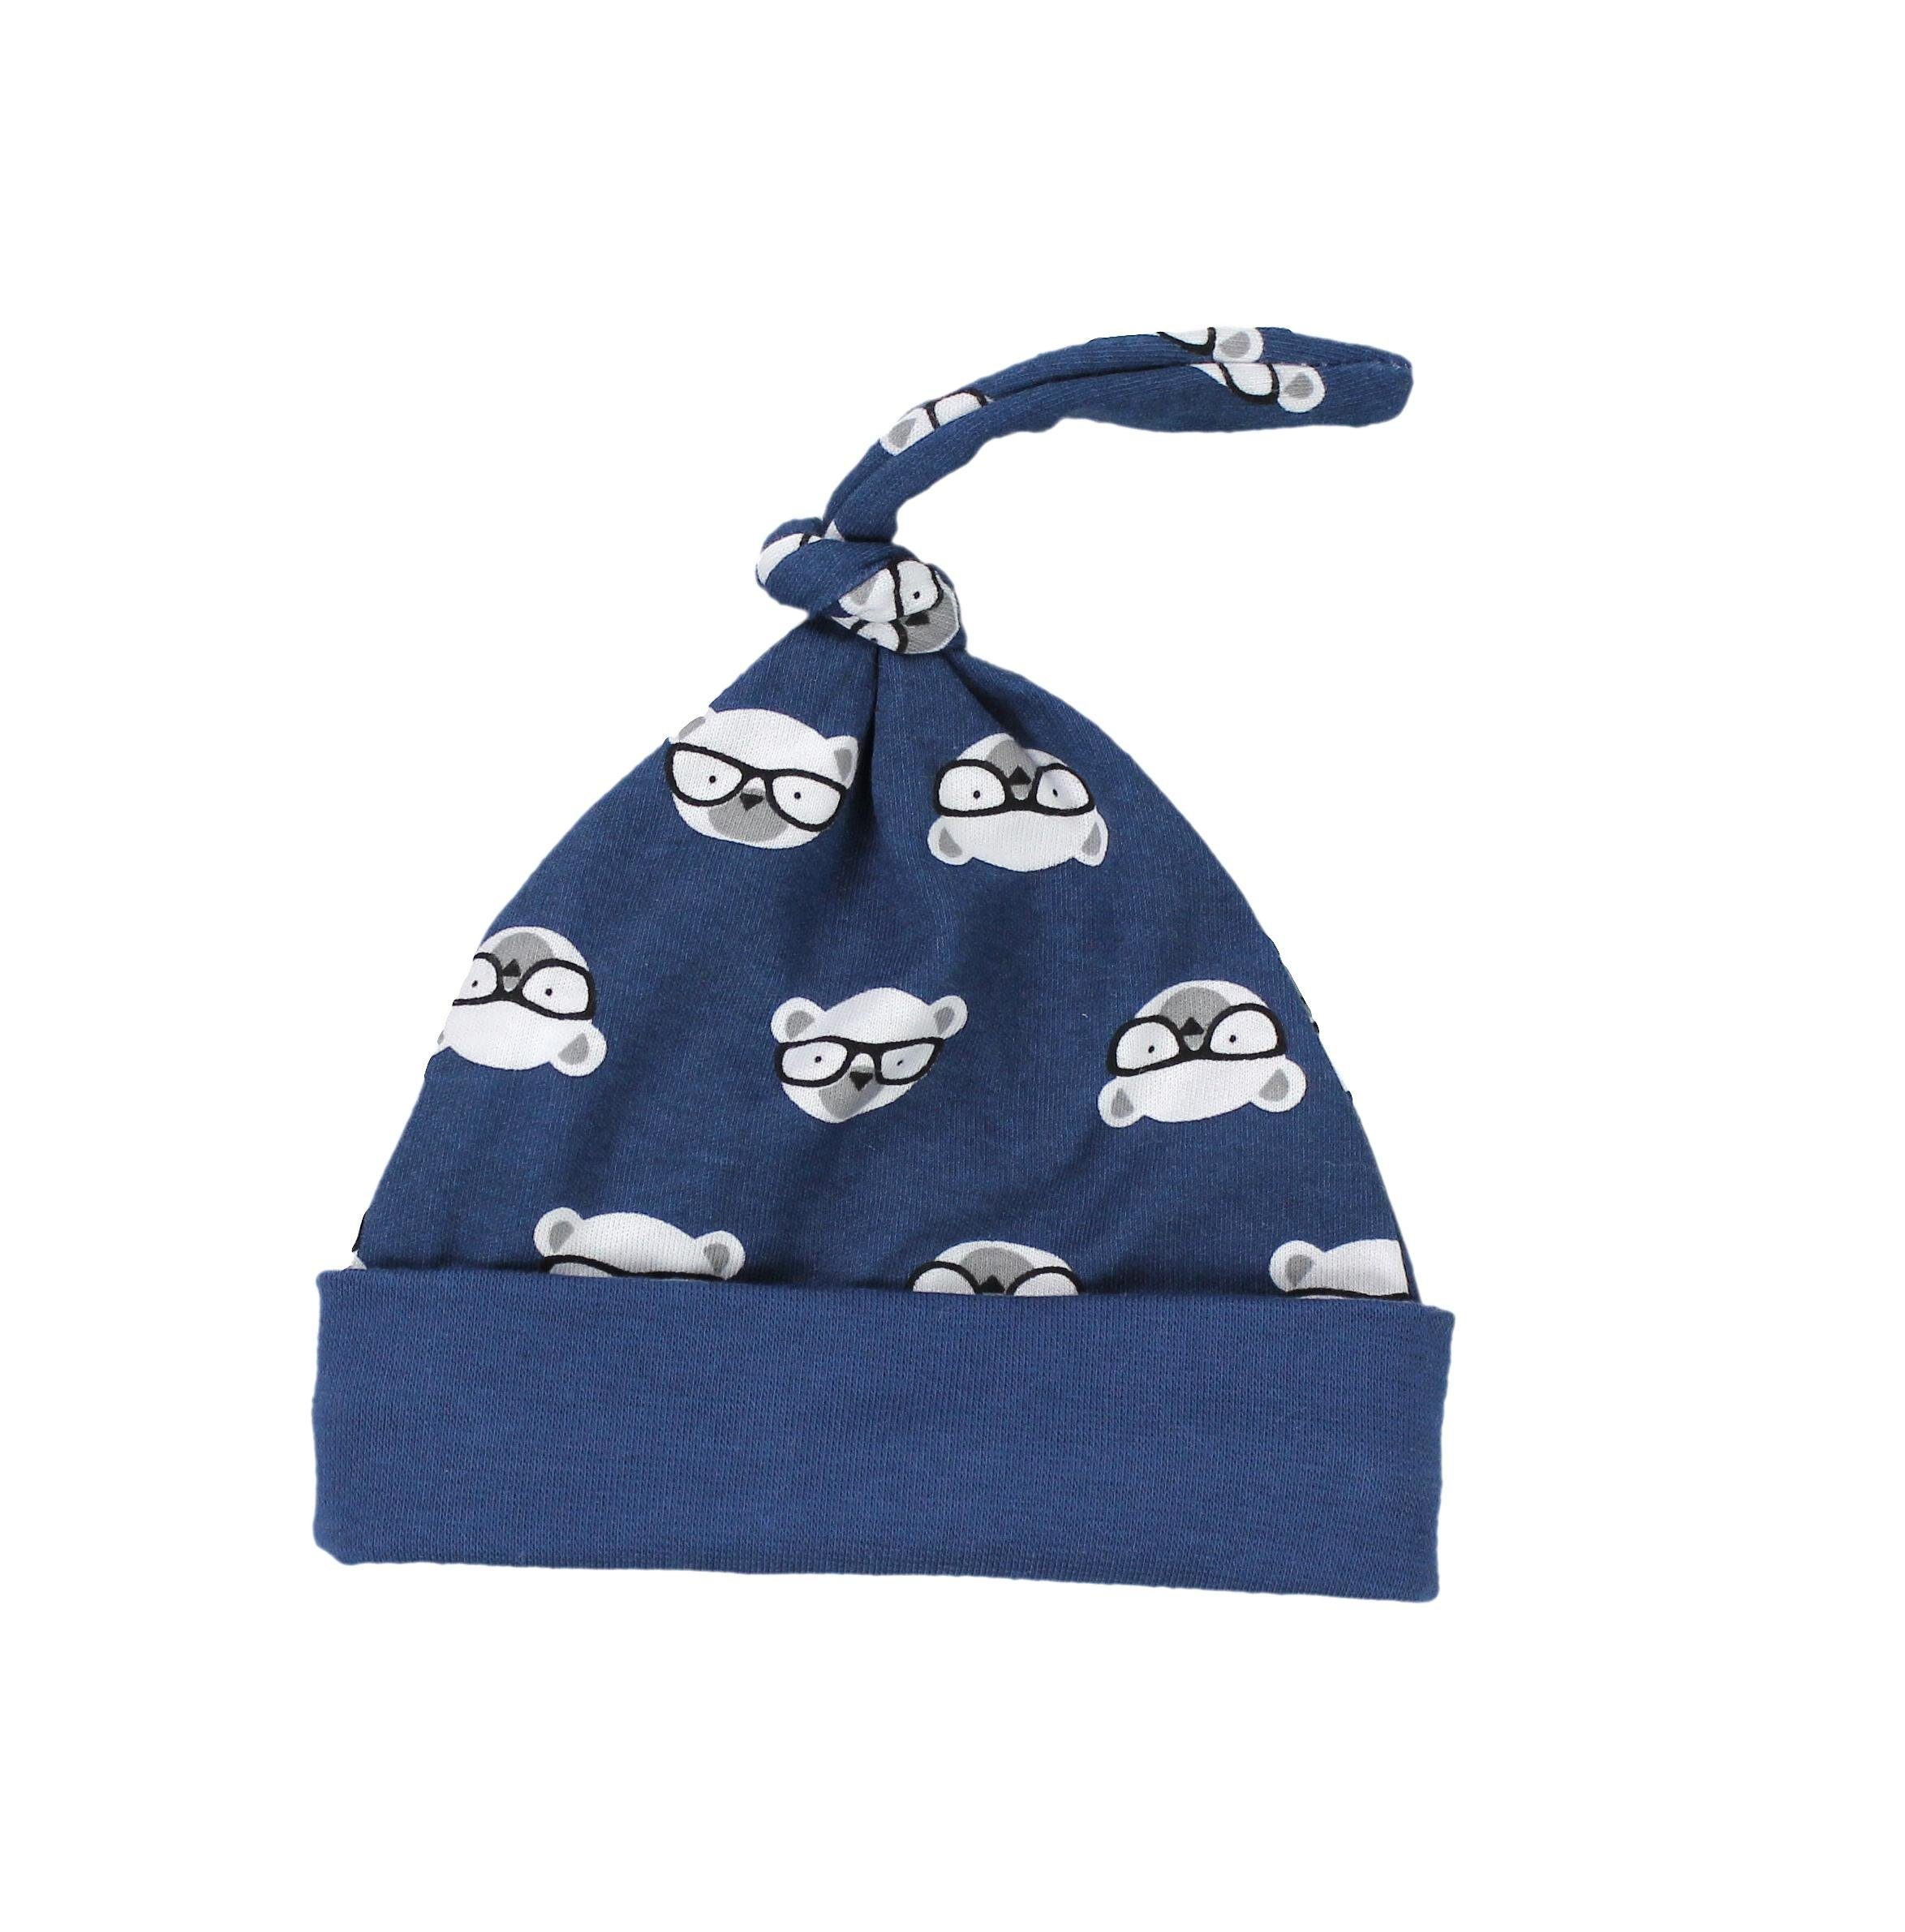 TupTam Erstausstattungspaket Baby Kleidung Set Grau Strampelhose / Bärchen Bekleidungsset mit Brille Body Dunkelblau Mütze